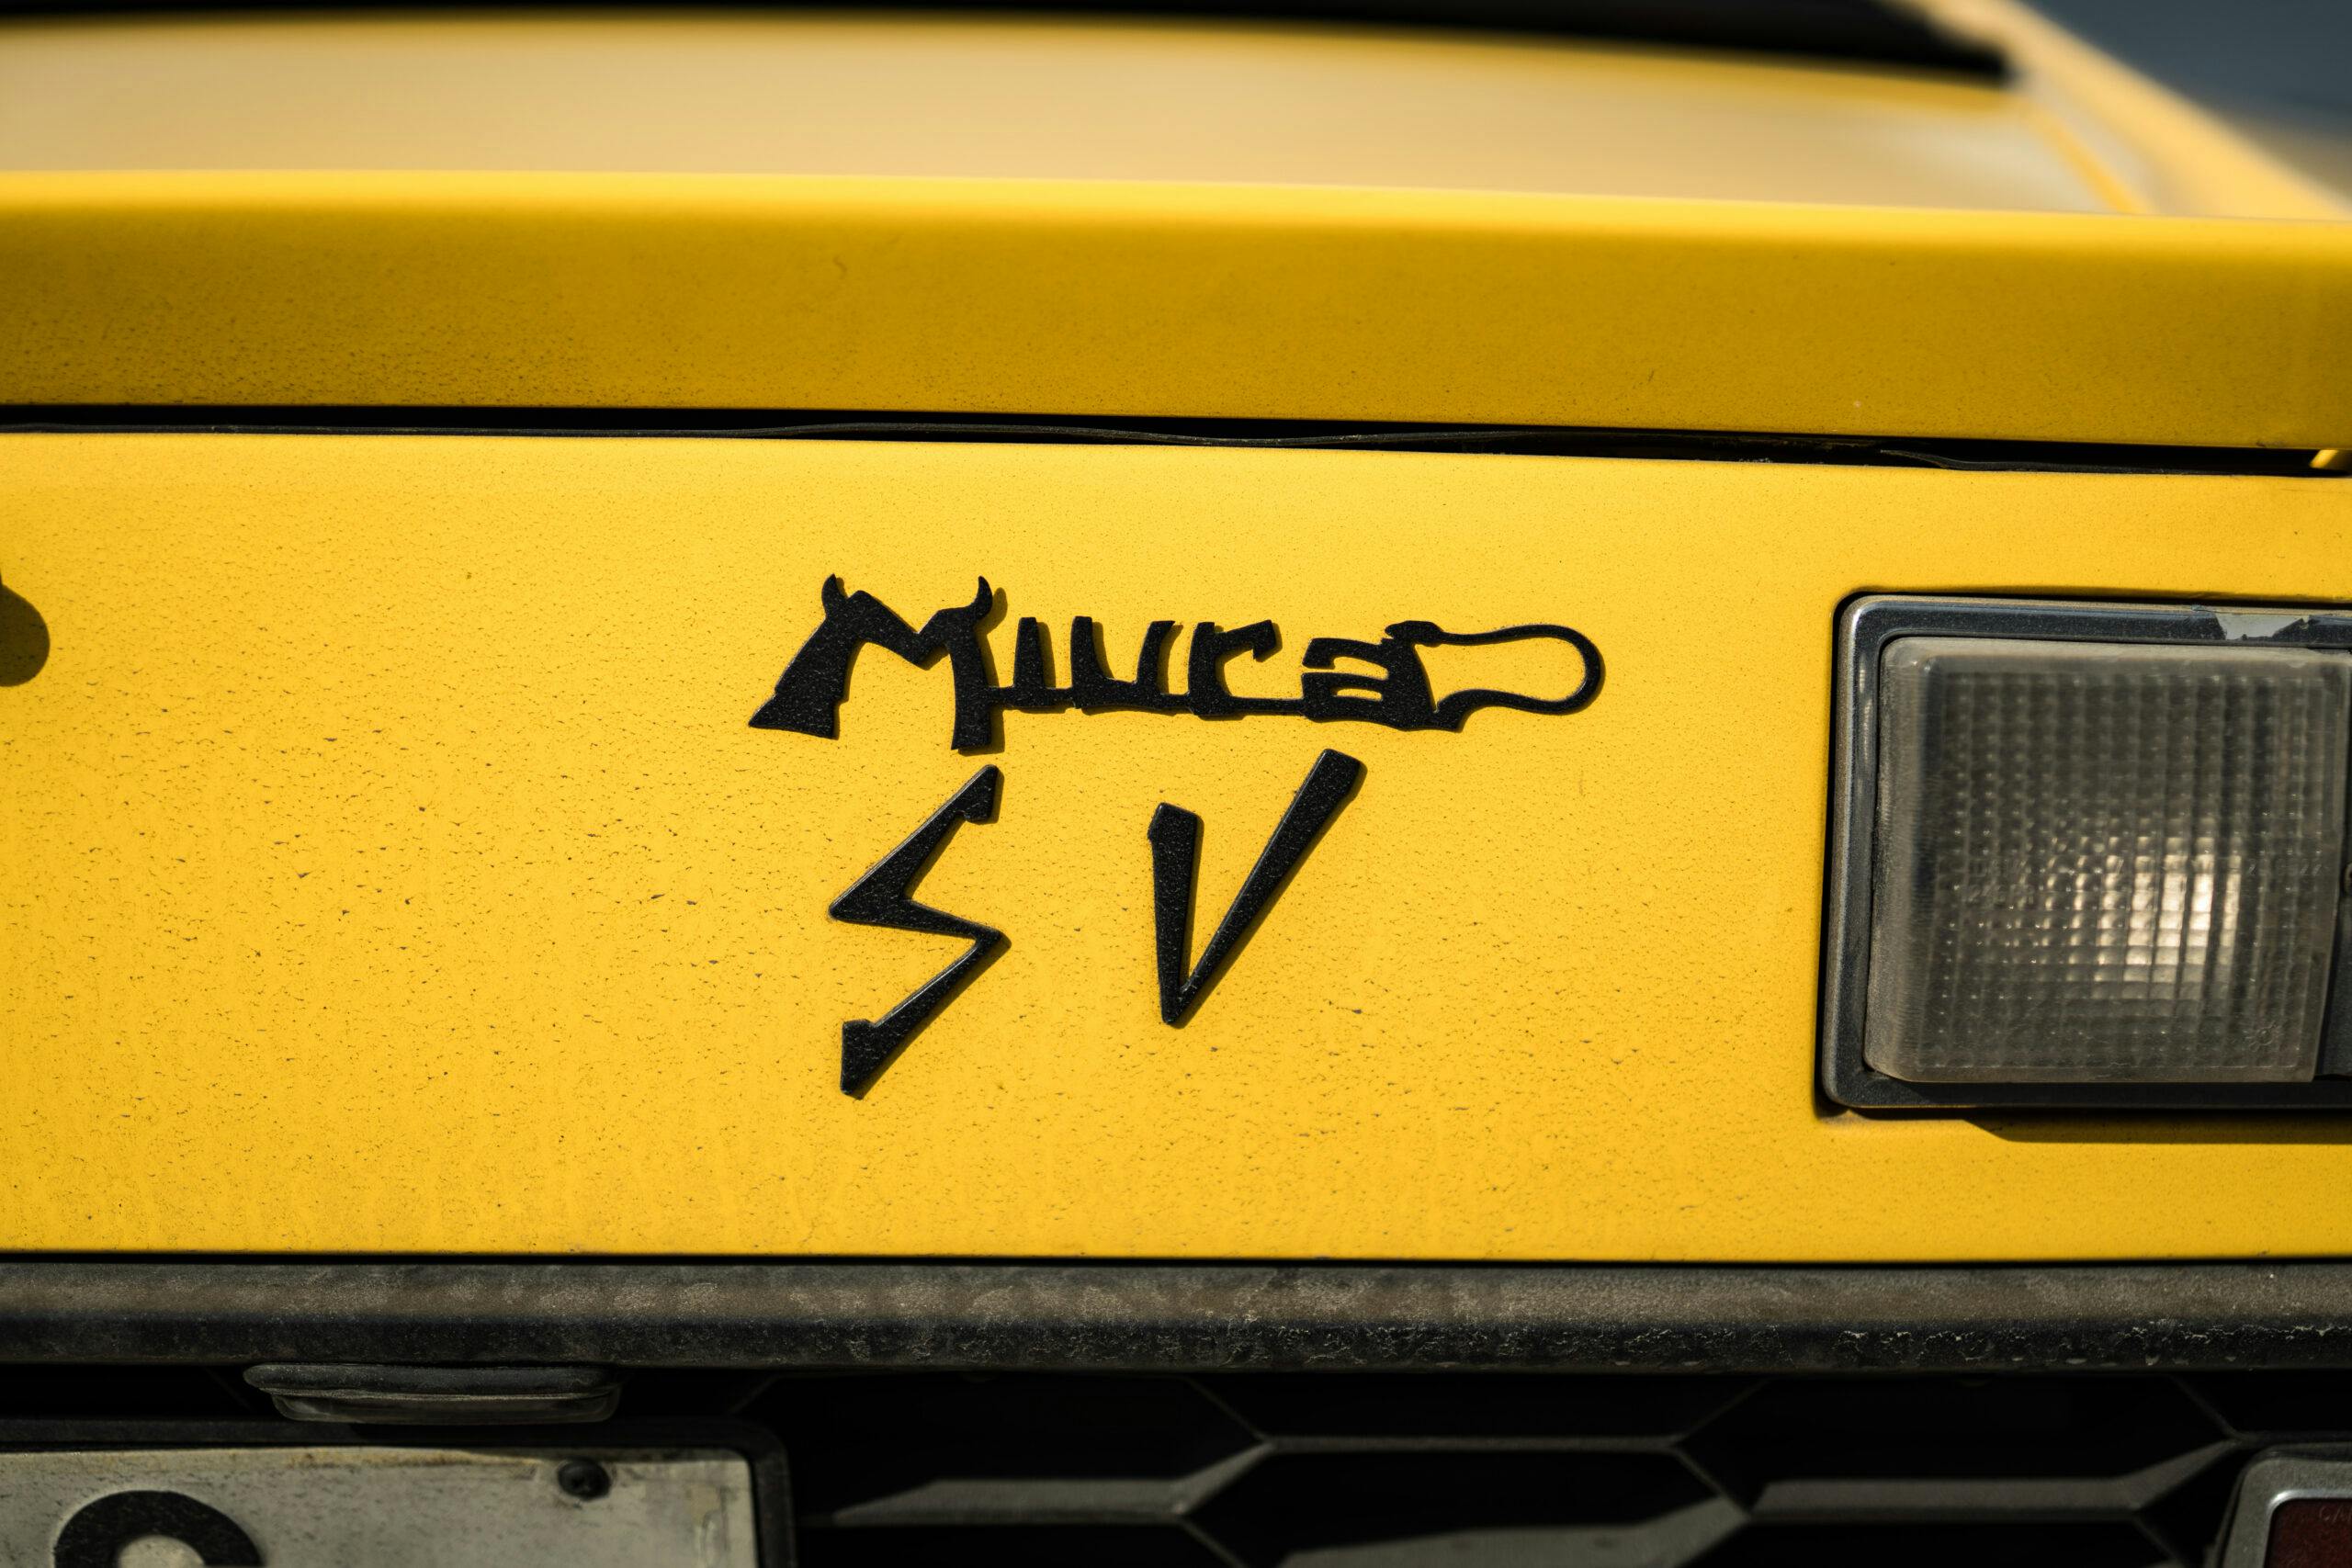 1973 Lamborghini Miura SV rear badge